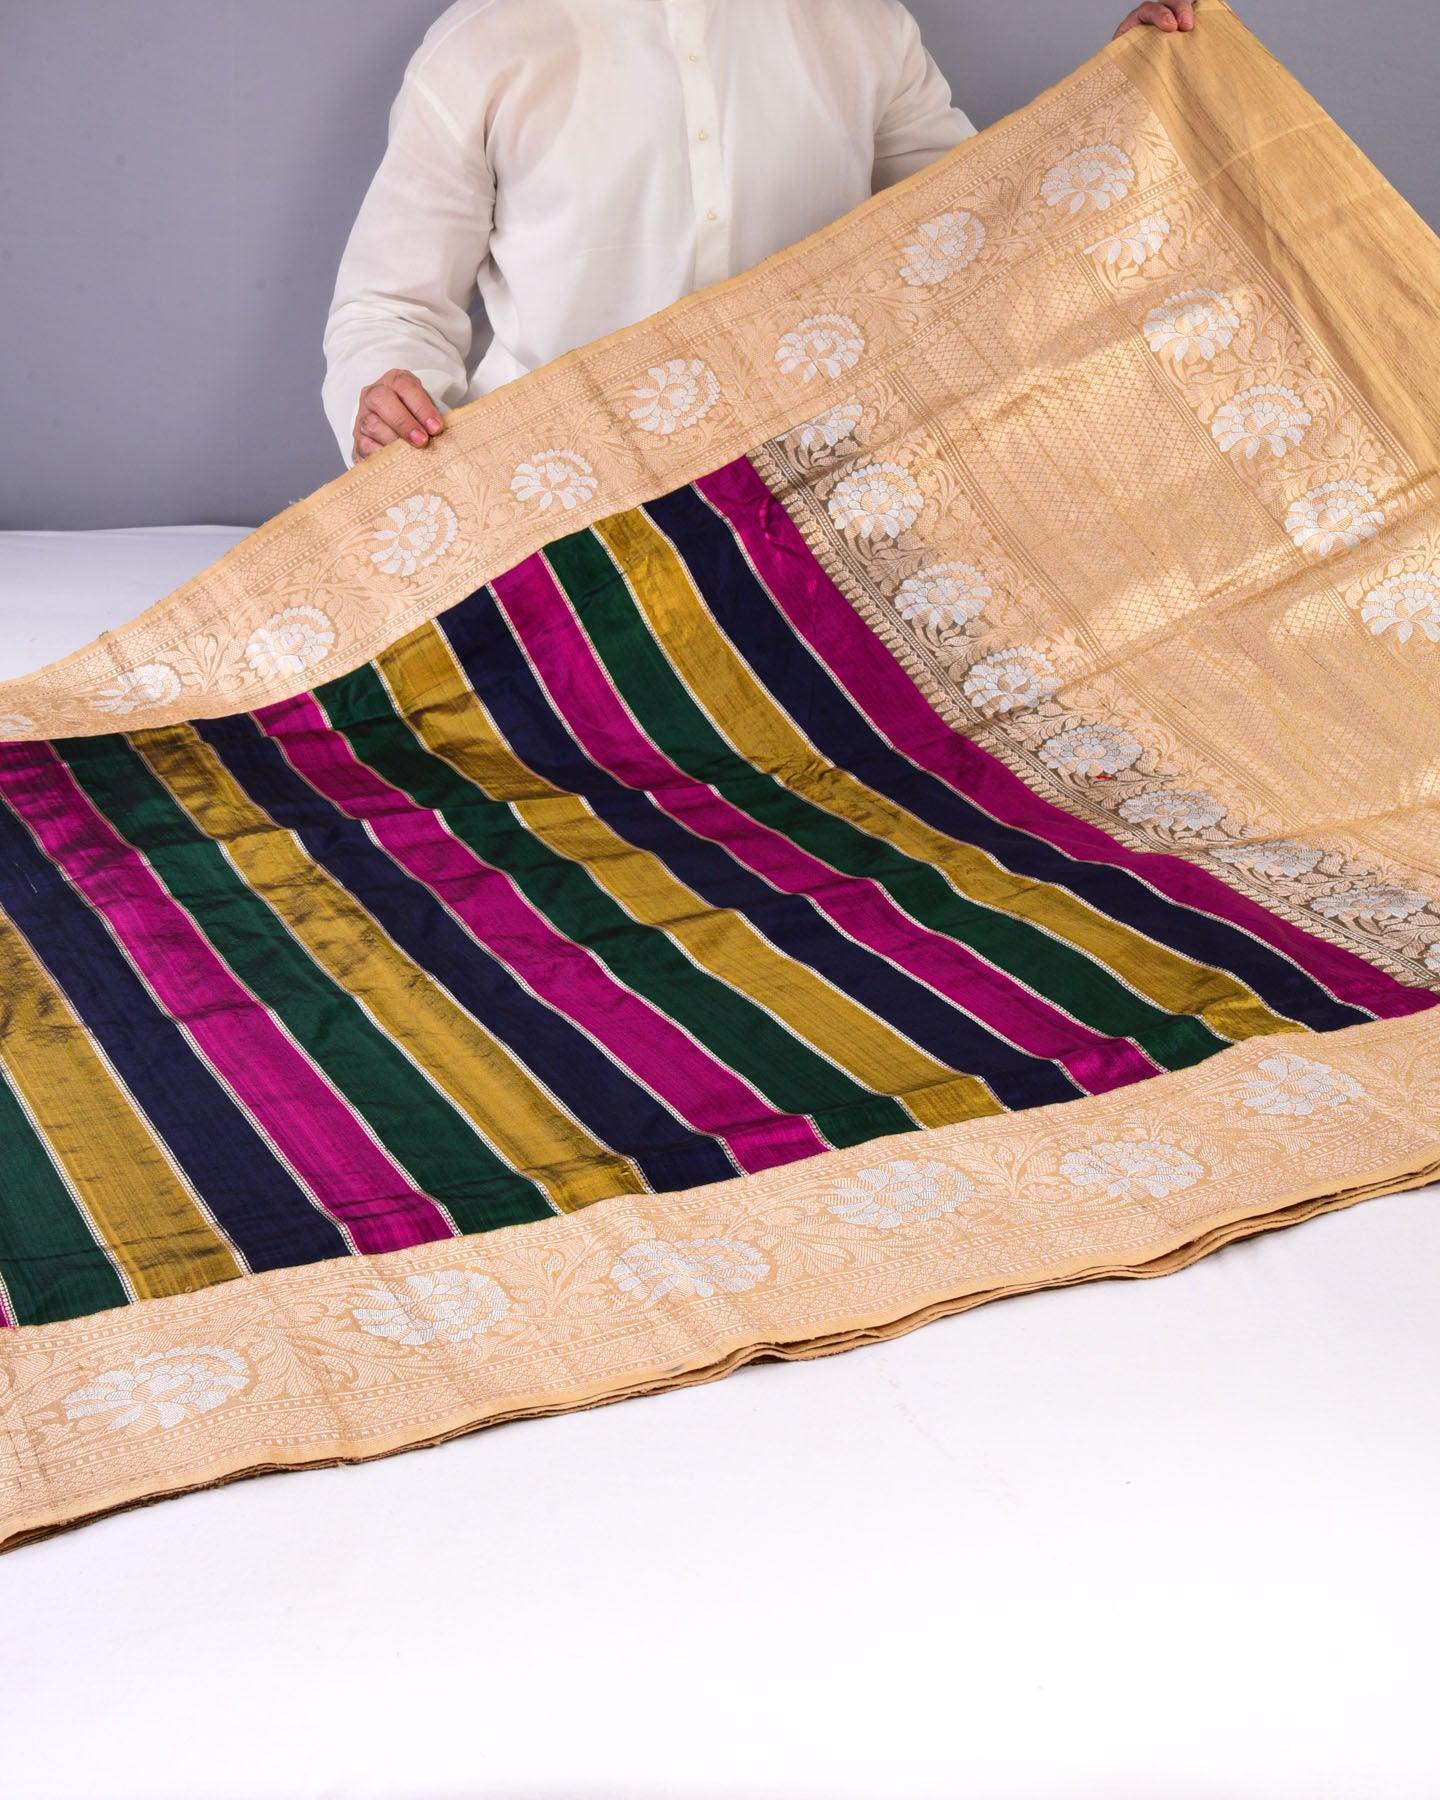 Deep Multi-color Rangkaat Banarasi Kadhuan Brocade Handwoven Katan Silk Saree with Tasar Brocade Border Pallu - By HolyWeaves, Benares